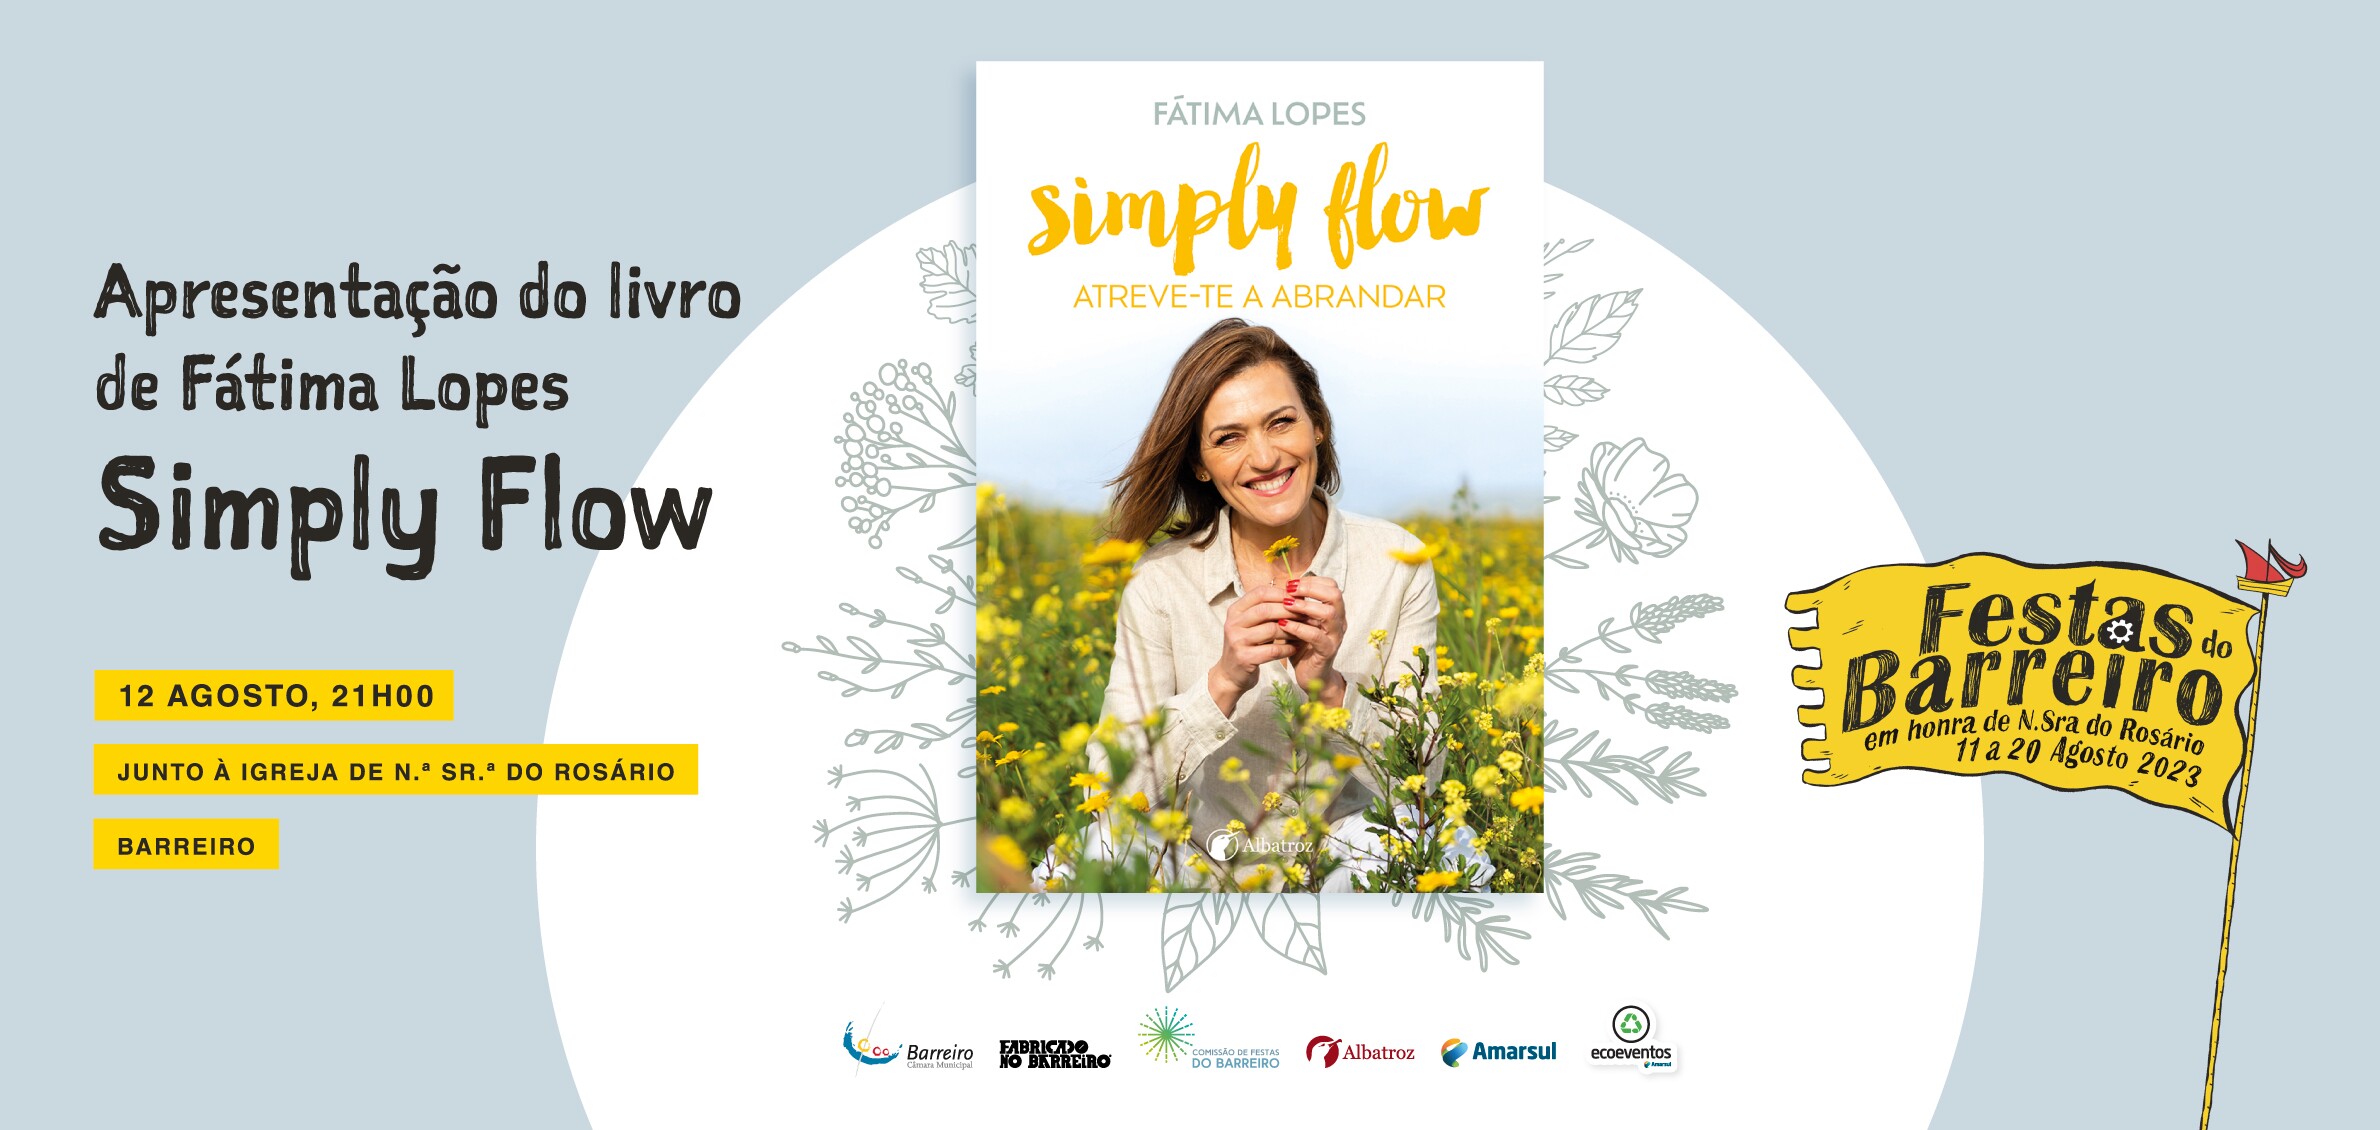 Apresentação do livro de Fátima Lopes “Simply Flow – Atreve-te a Abrandar” |...